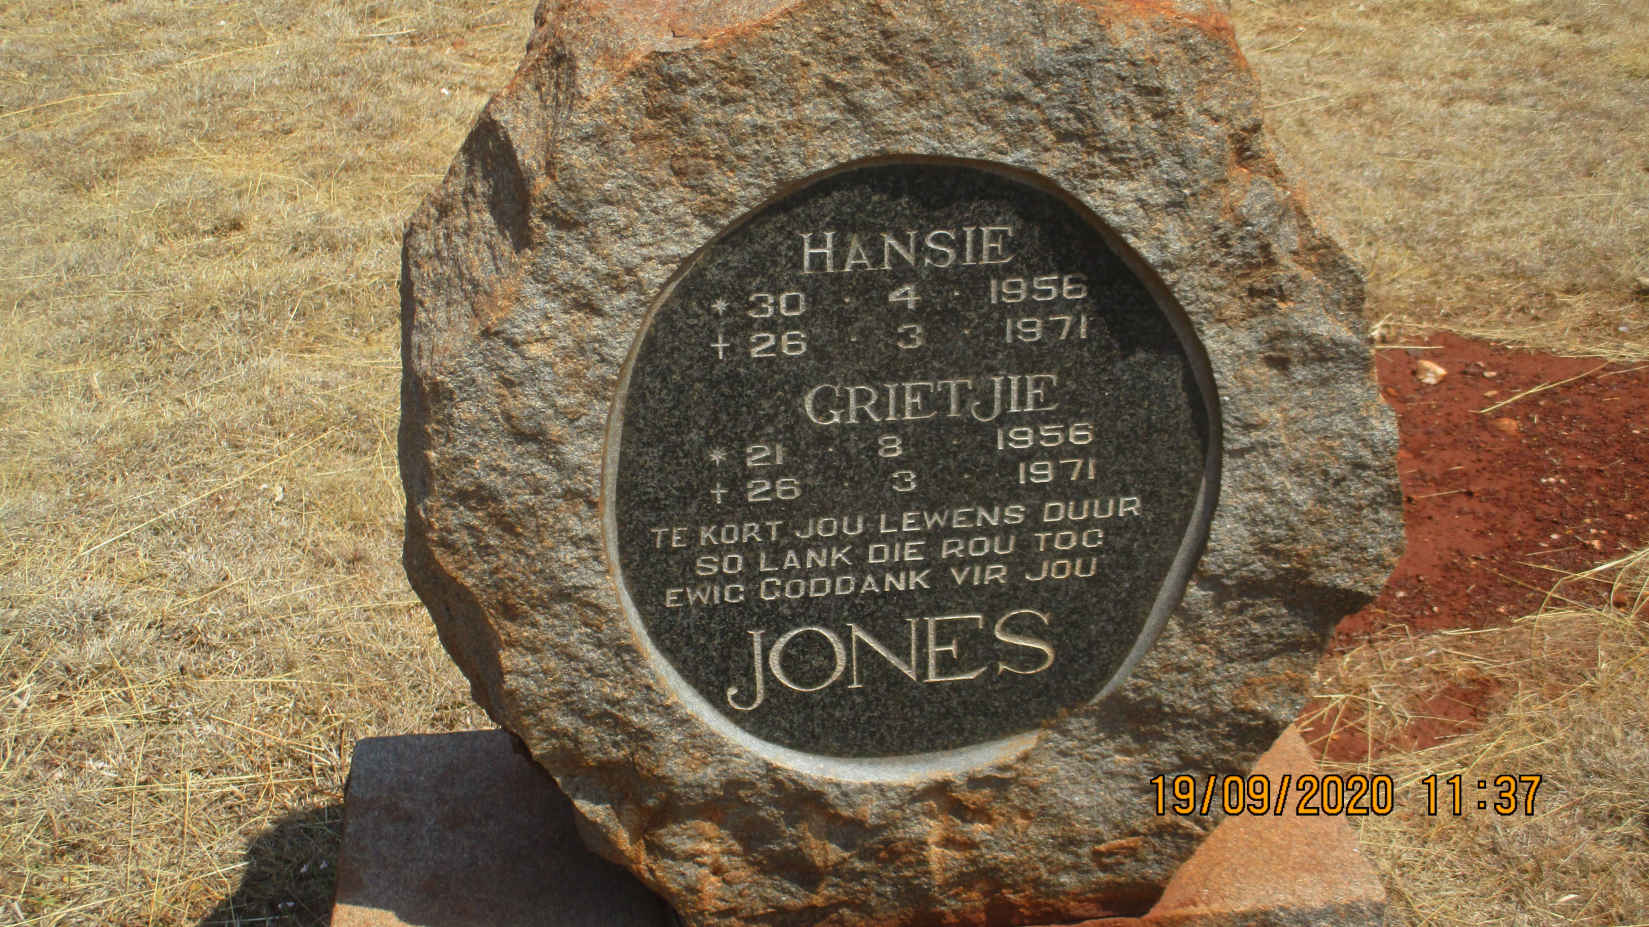 JONES Hansie 1956-1971 & Grietjie 1956-1971